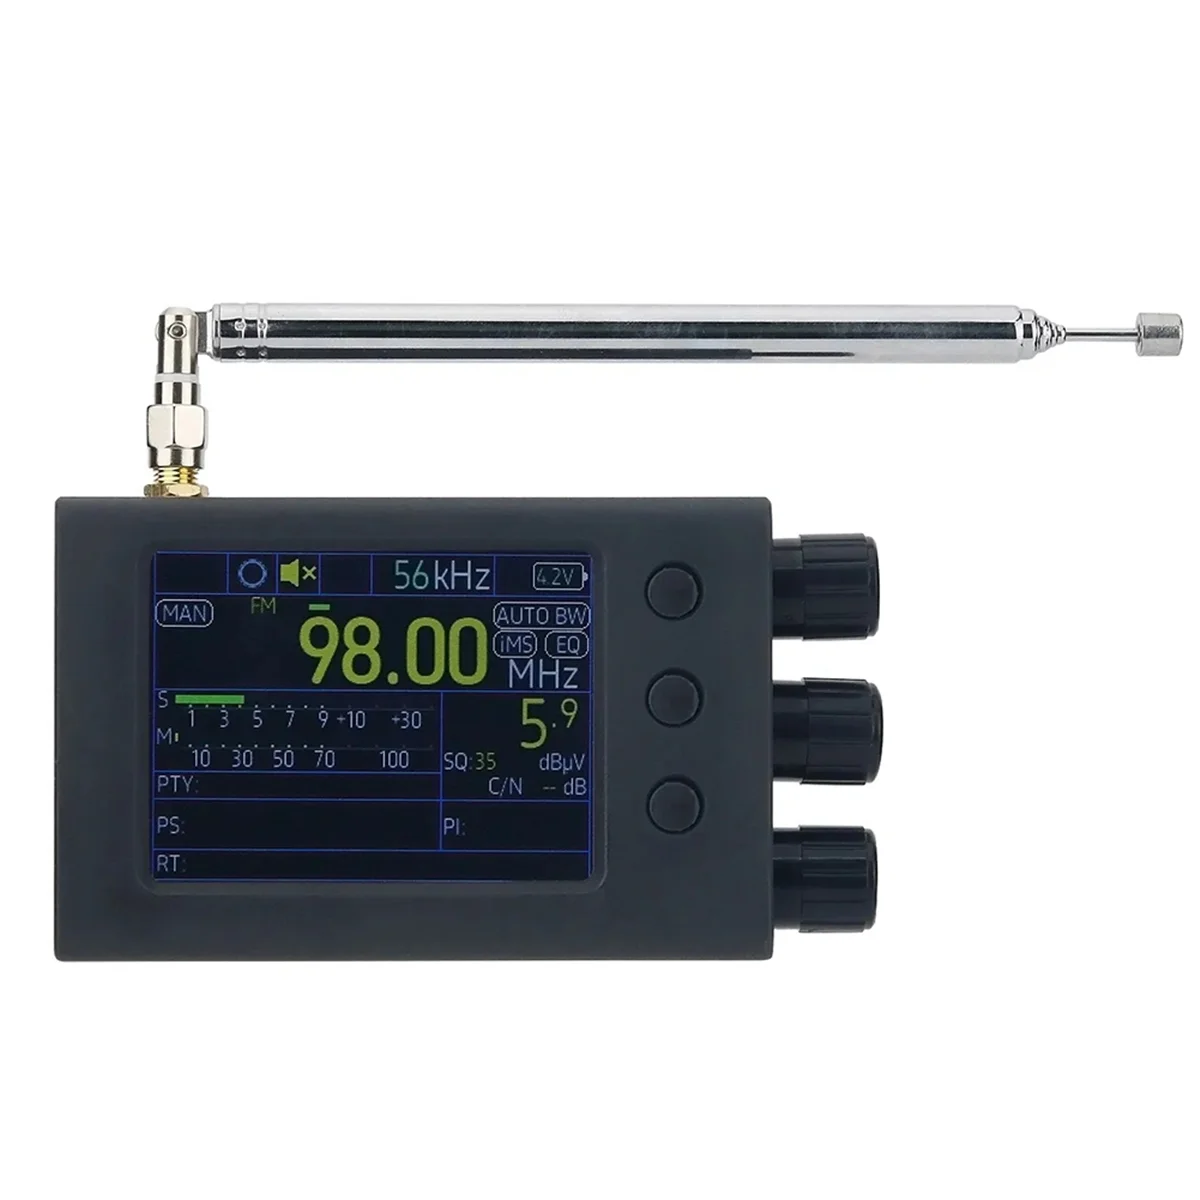 

64-108 МГц Портативный TEF6686 Полнодиапазонный радиоприемник RDS приемник AM FM SW MW LW с антенной экран 2,8 дюйма PE5PVB B